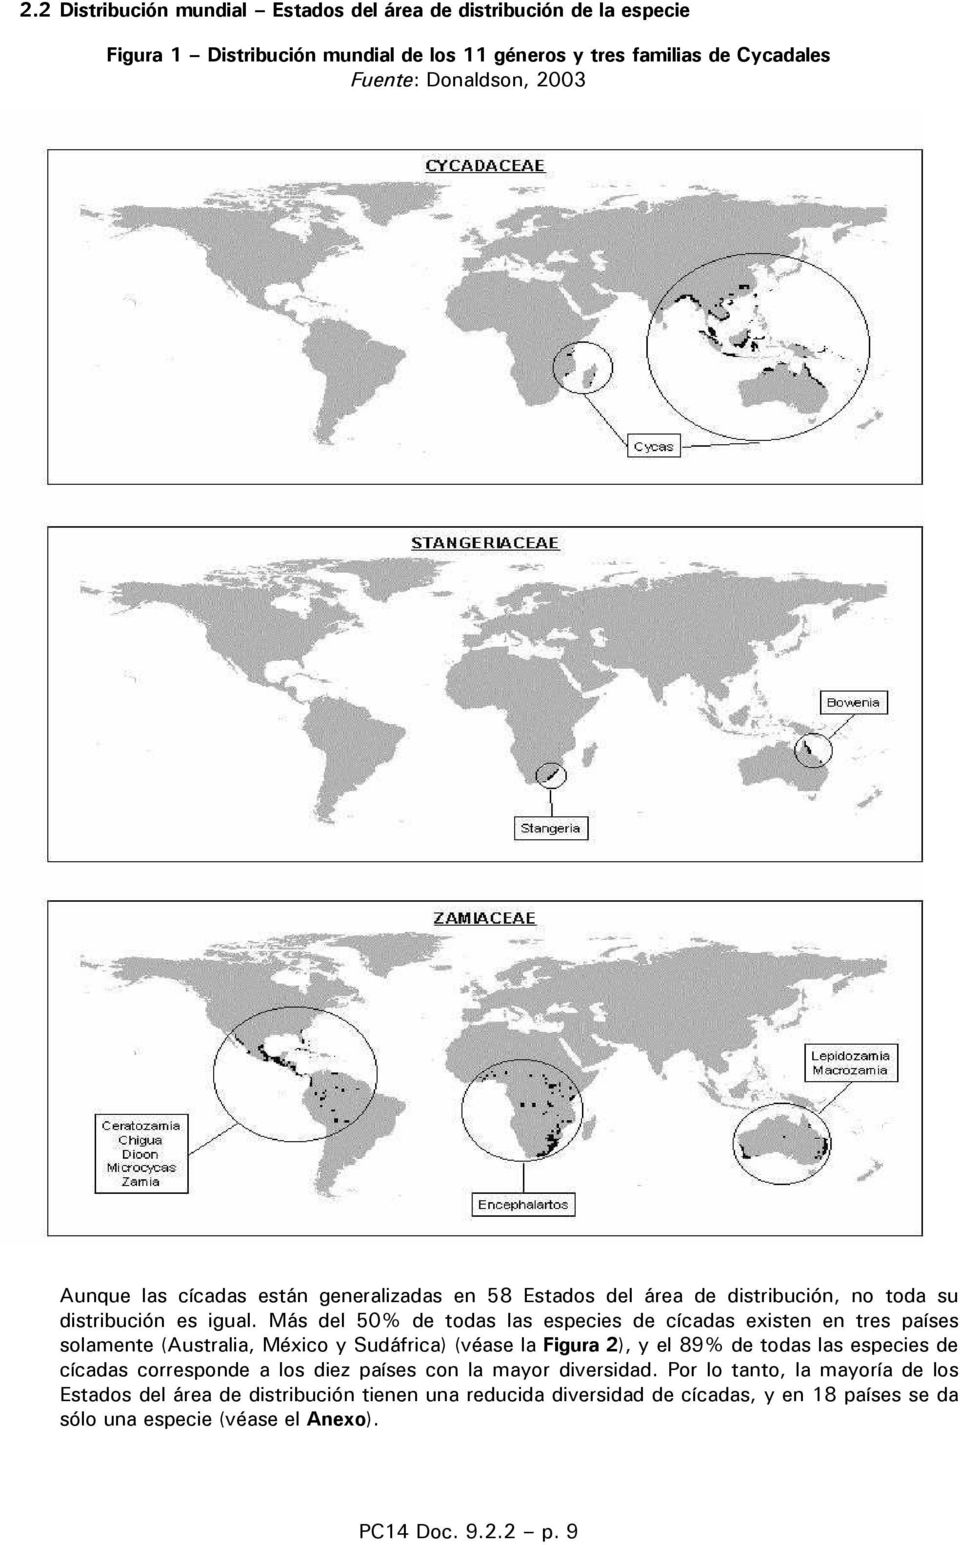 Más del 50% de todas las especies de cícadas existen en tres países solamente (Australia, México y Sudáfrica) (véase la Figura 2), y el 89% de todas las especies de cícadas